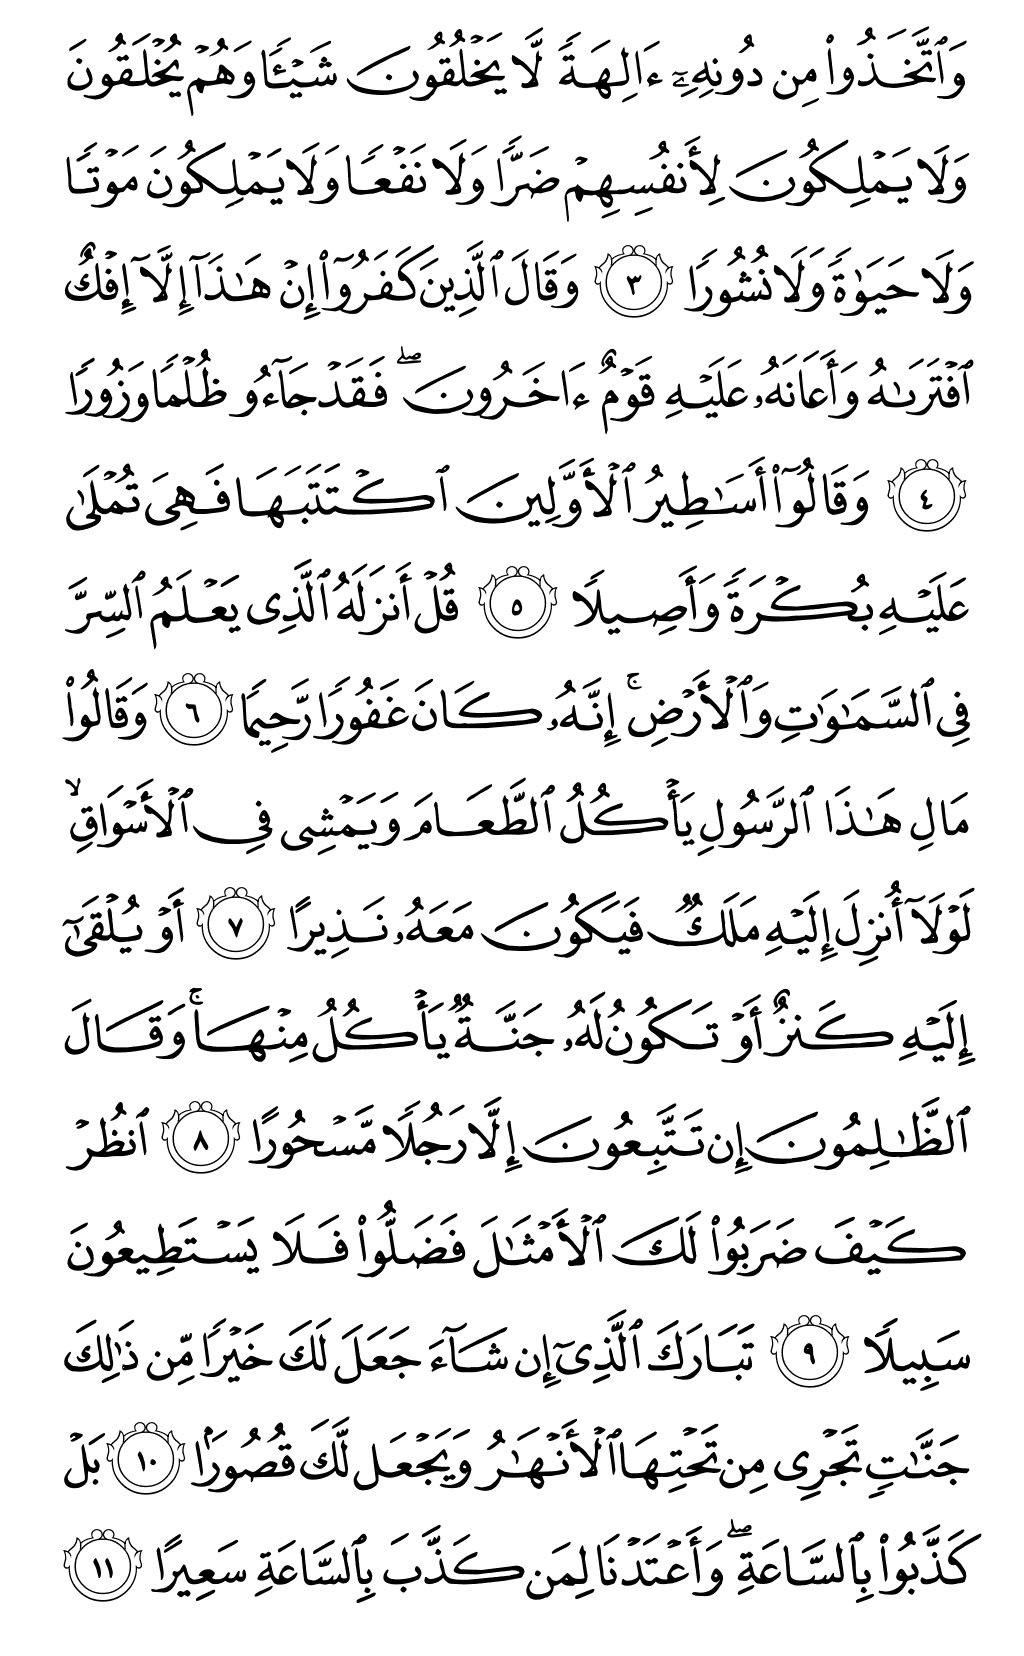 الصفحة رقم 360 من القرآن الكريم